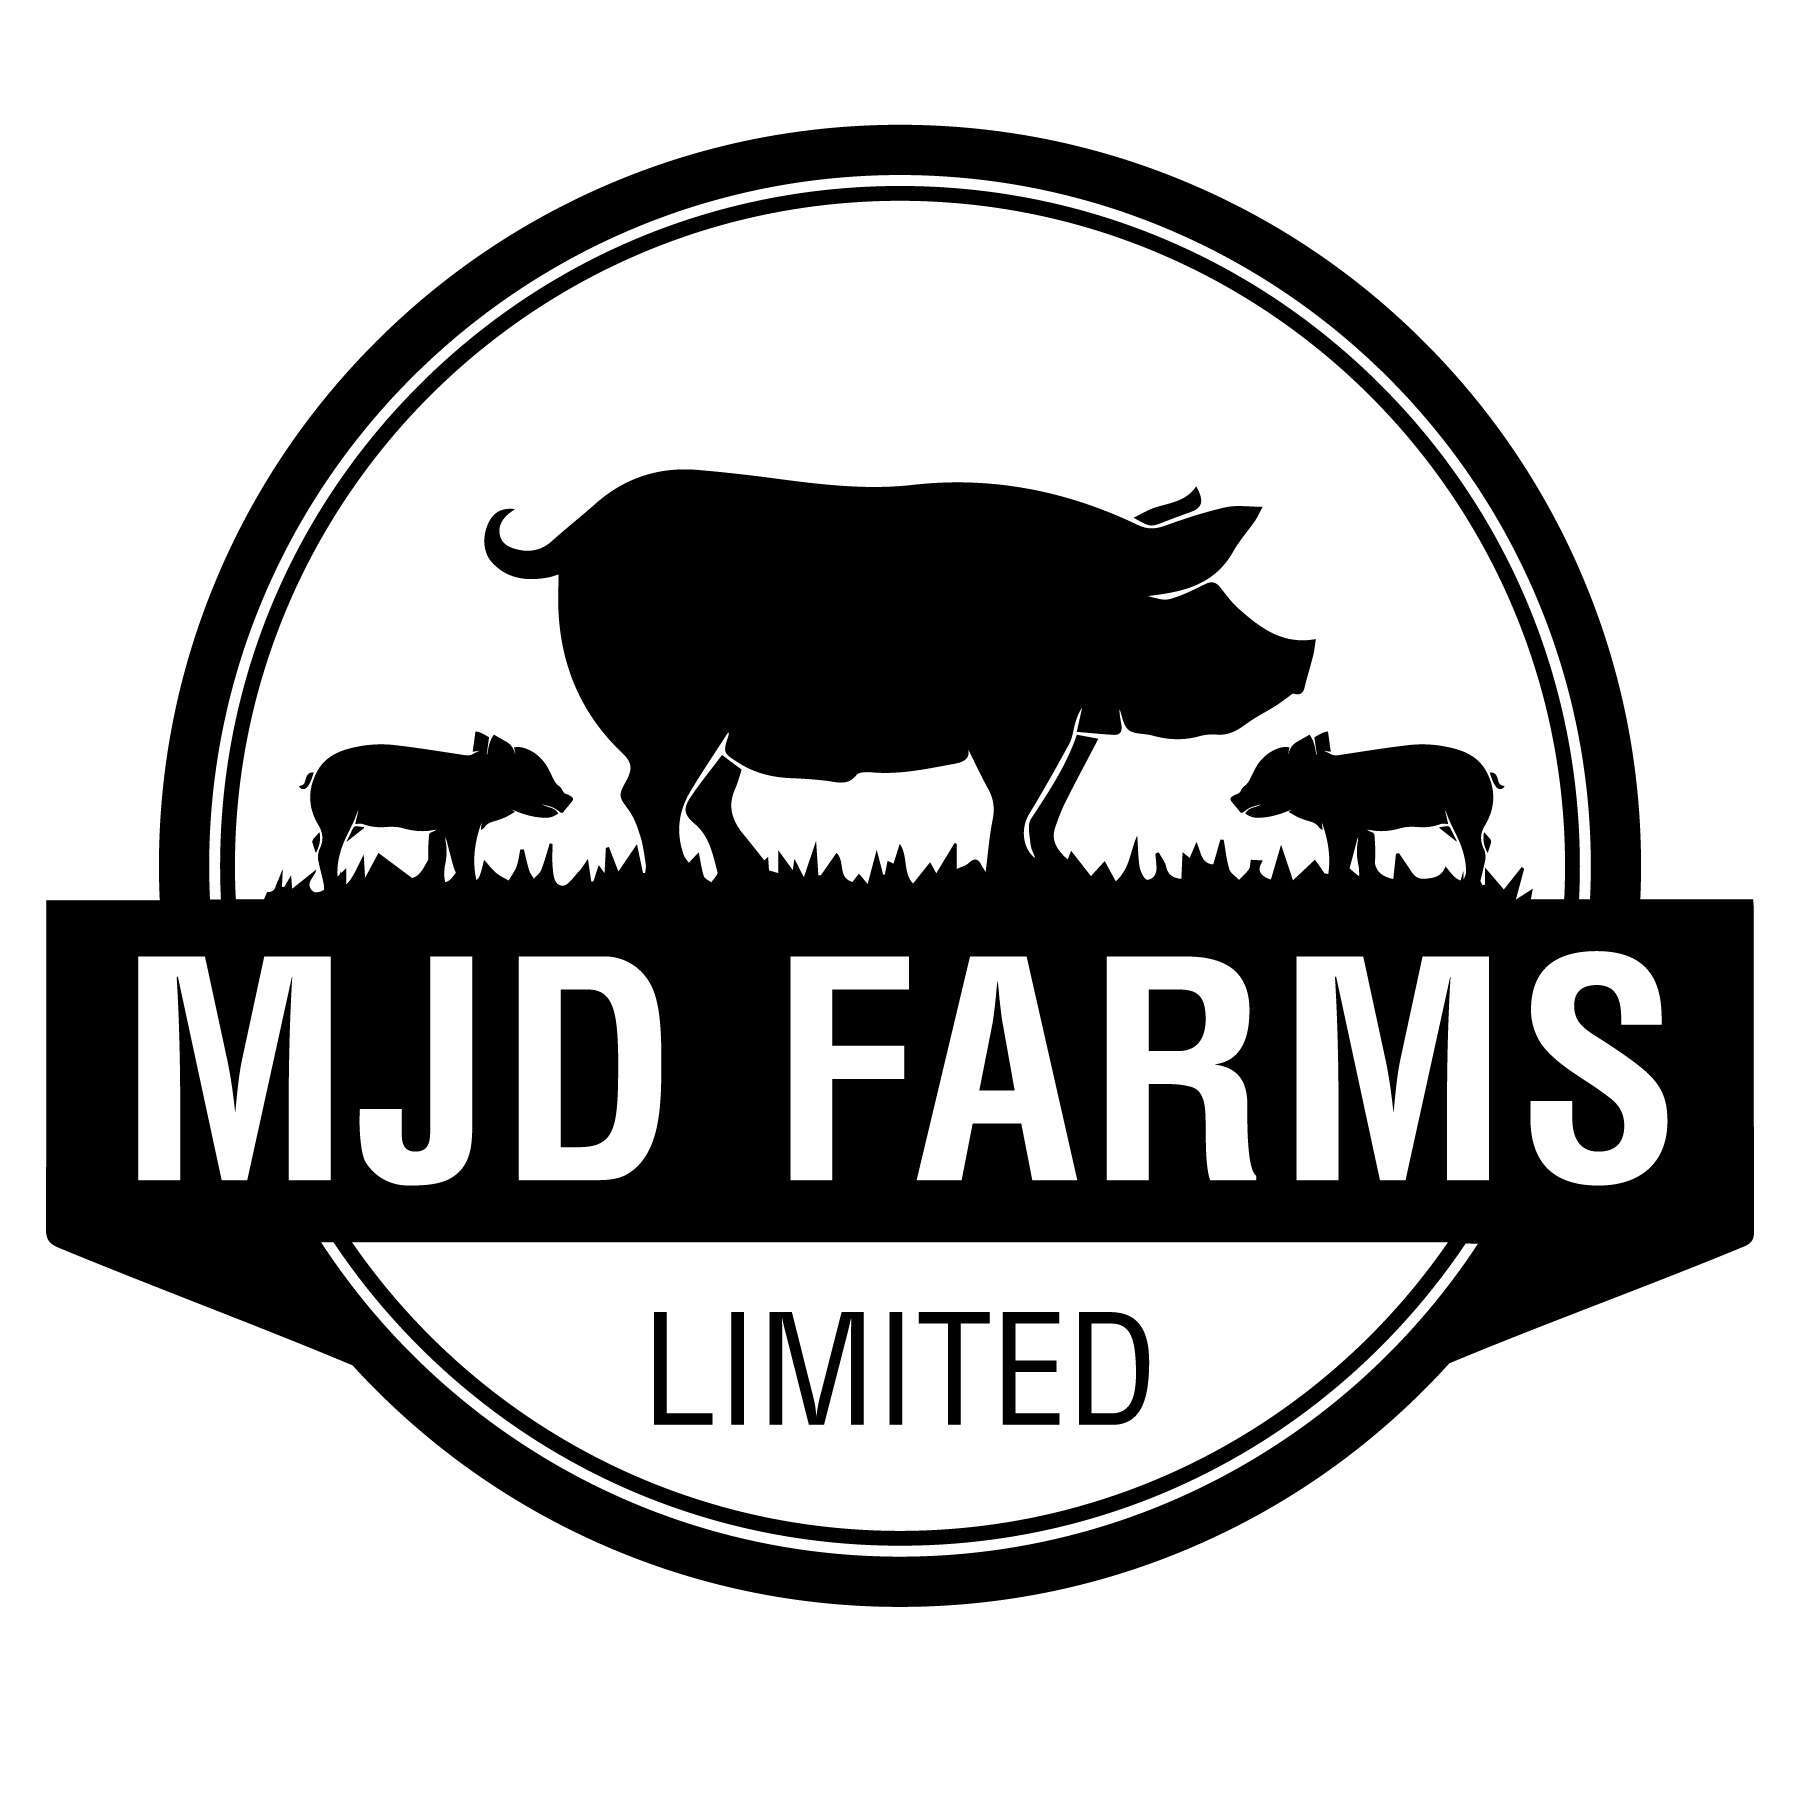 MJD Farms Limited